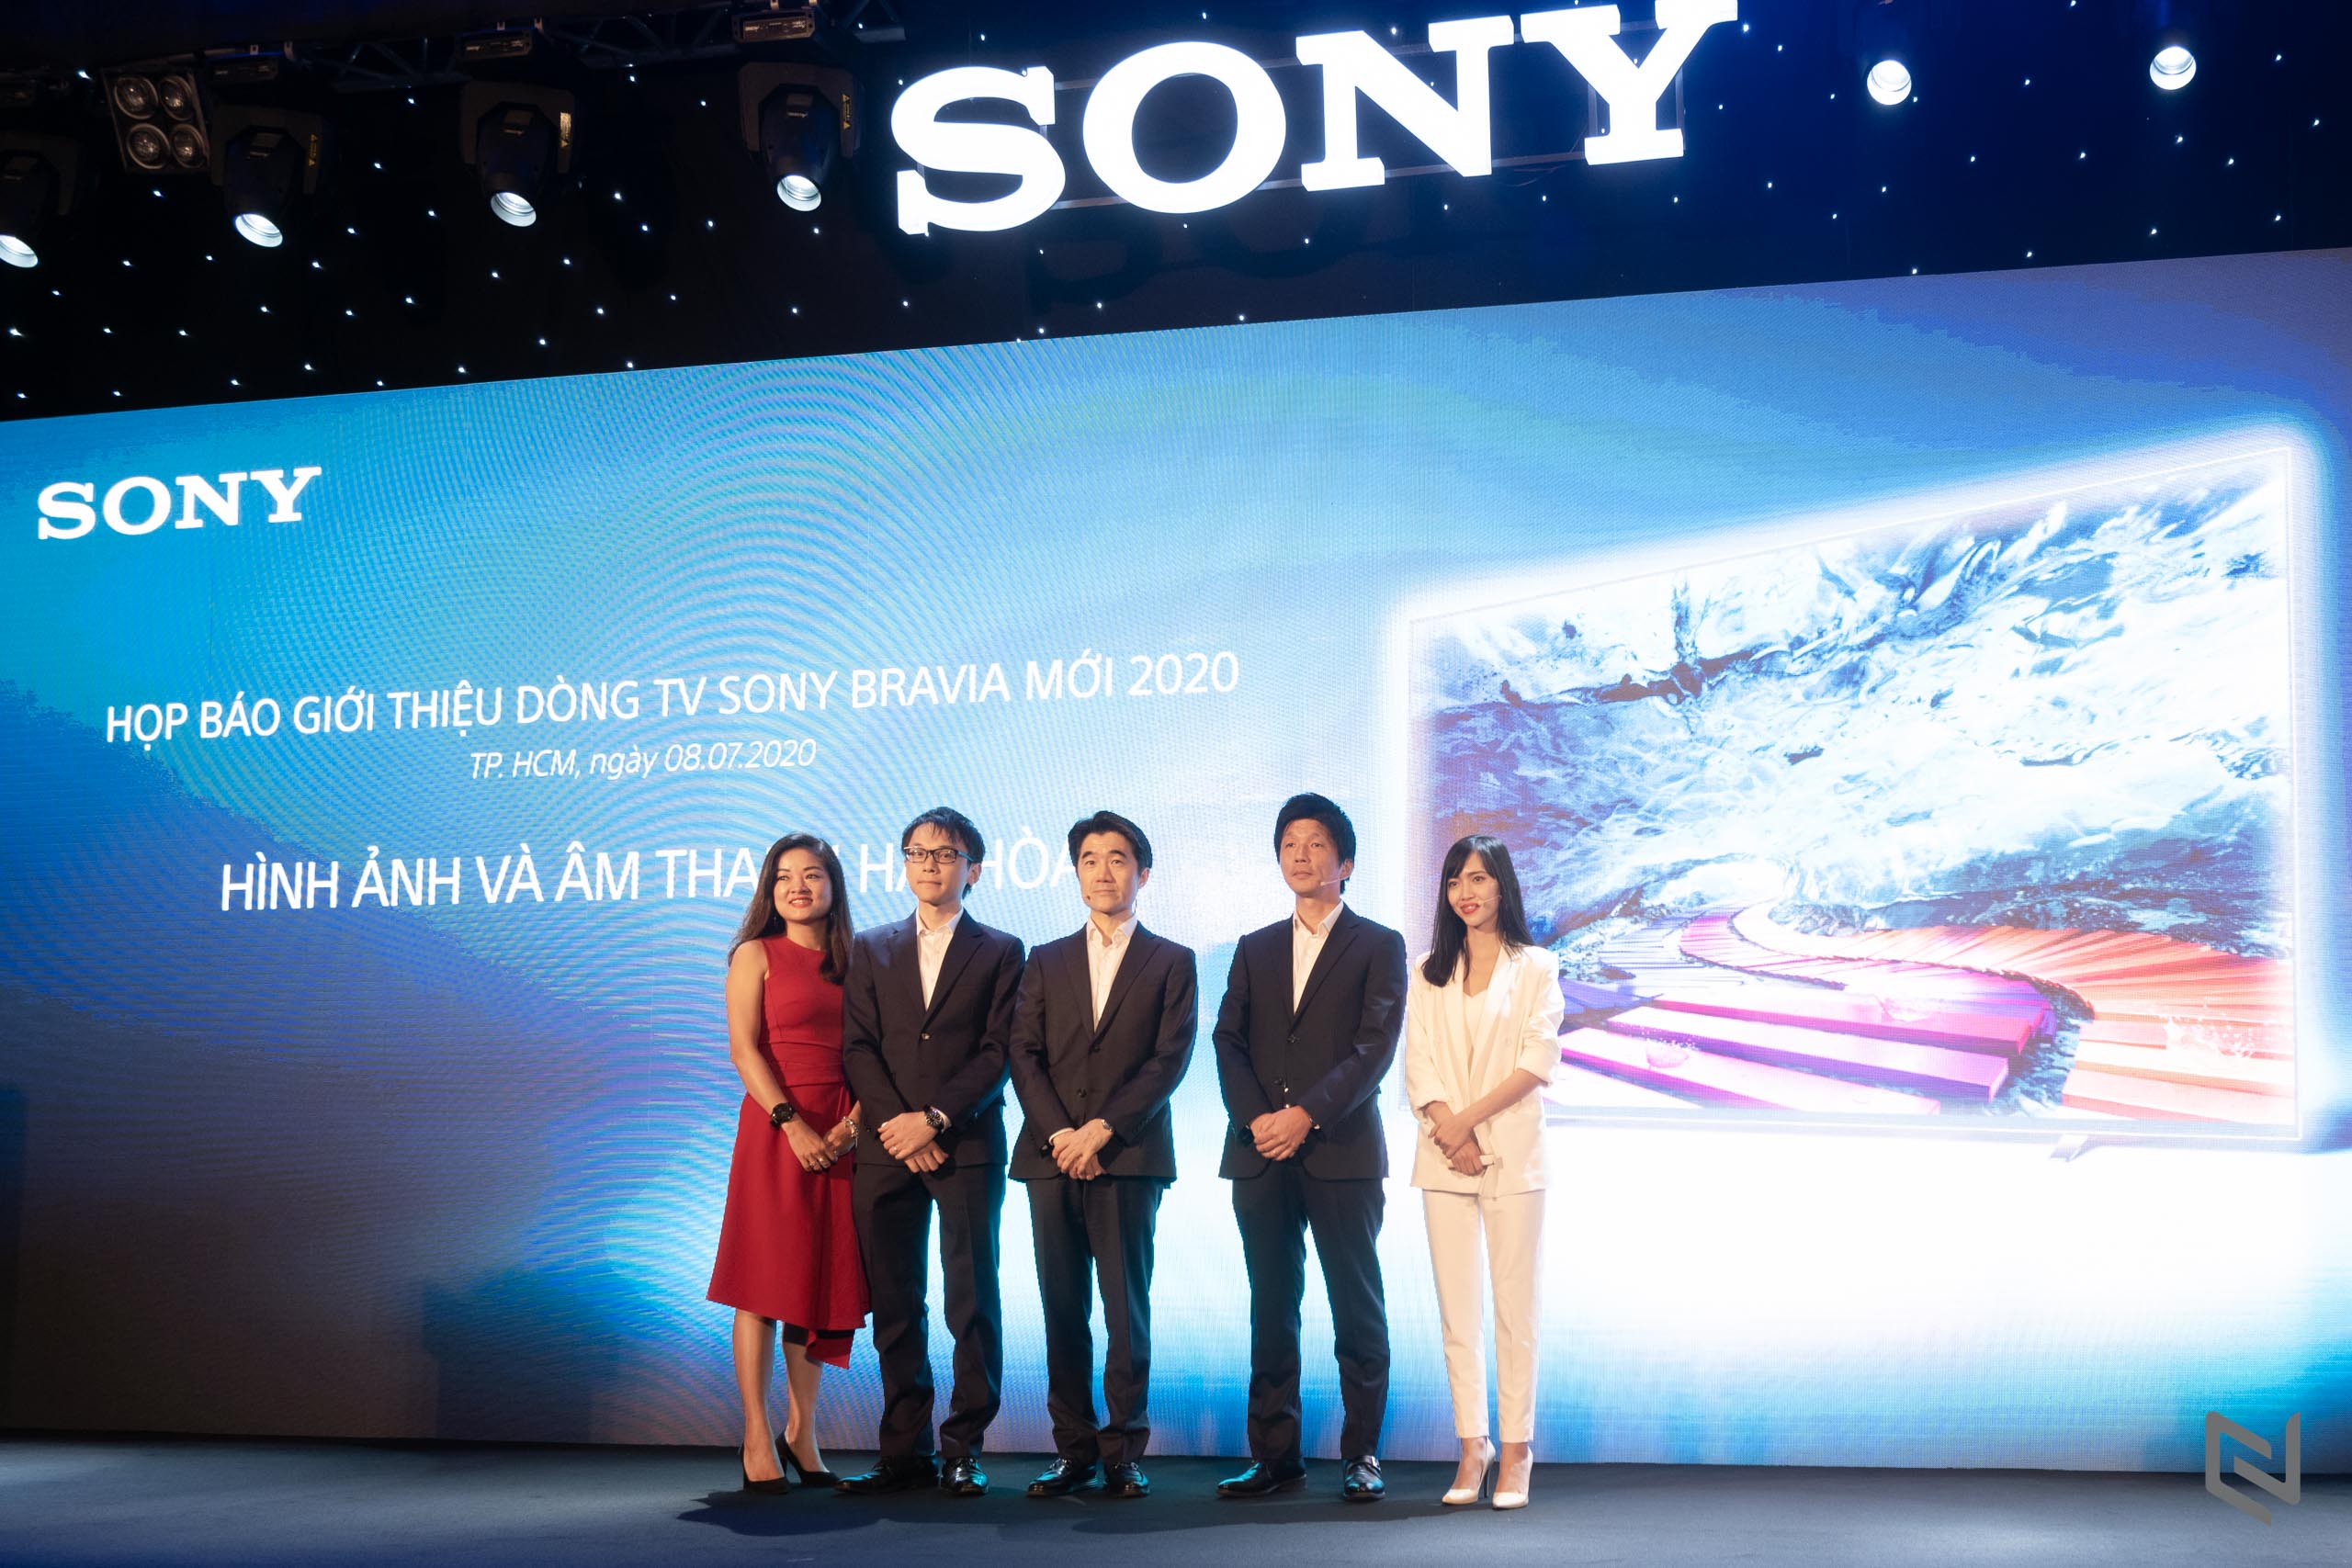 Ra mắt dòng TV Sony Bravia 2020 tại Việt Nam: Chạm đến chuẩn giải trí cao cấp nhất